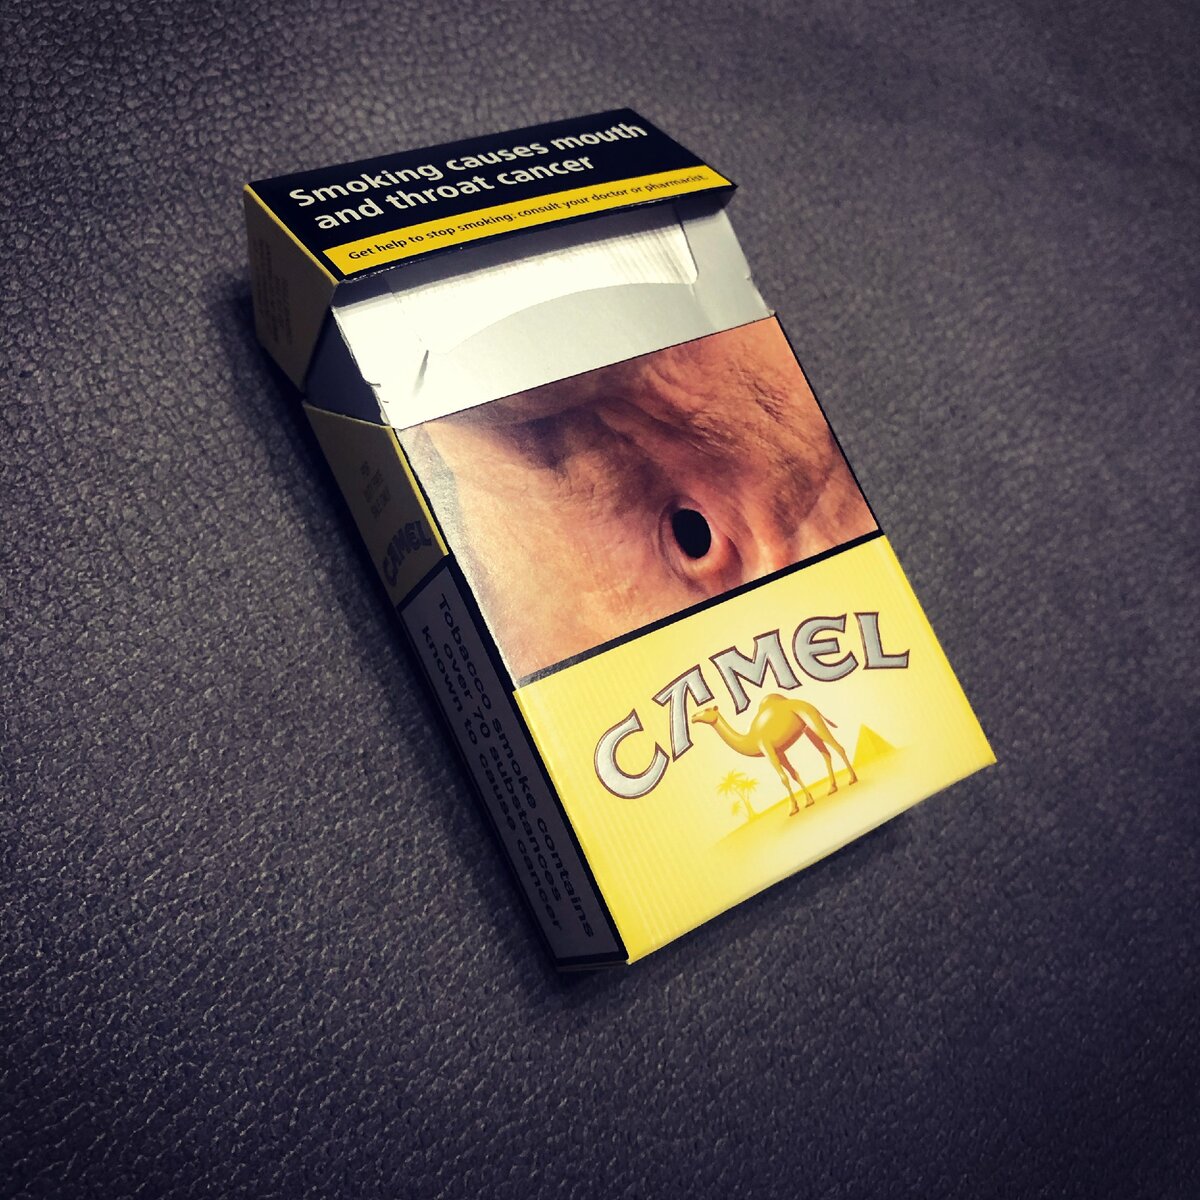 Сигареты кэмел тонкие с кнопкой фото